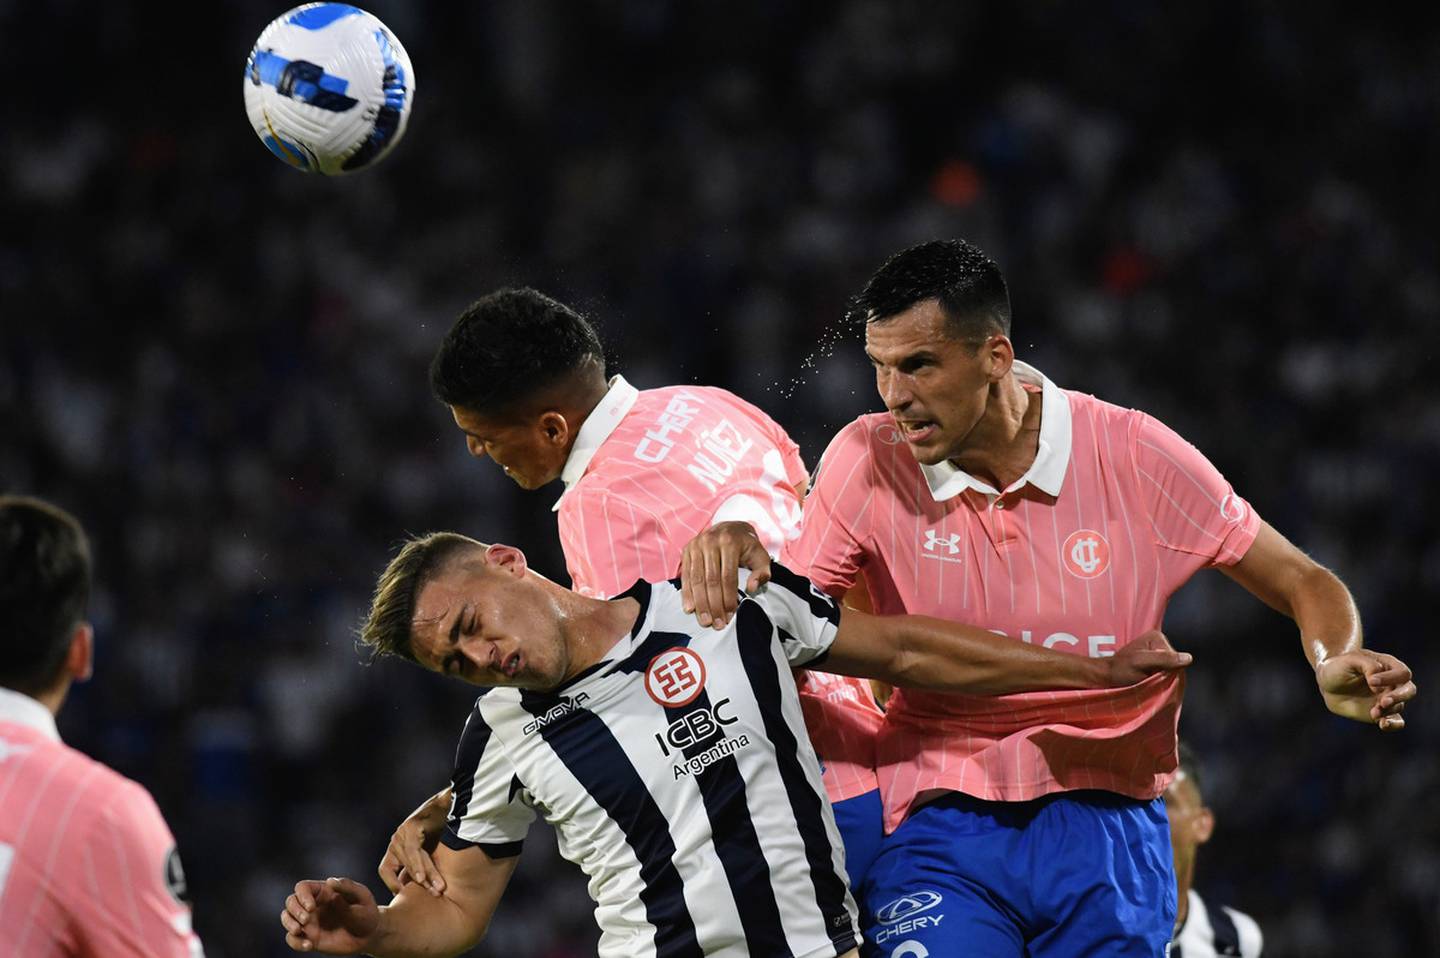 El defensa argentino Nehuén Paz salta para cabecear una pelota durante el partido de la Universidad Católica y Talleres en la Copa Libertadores.